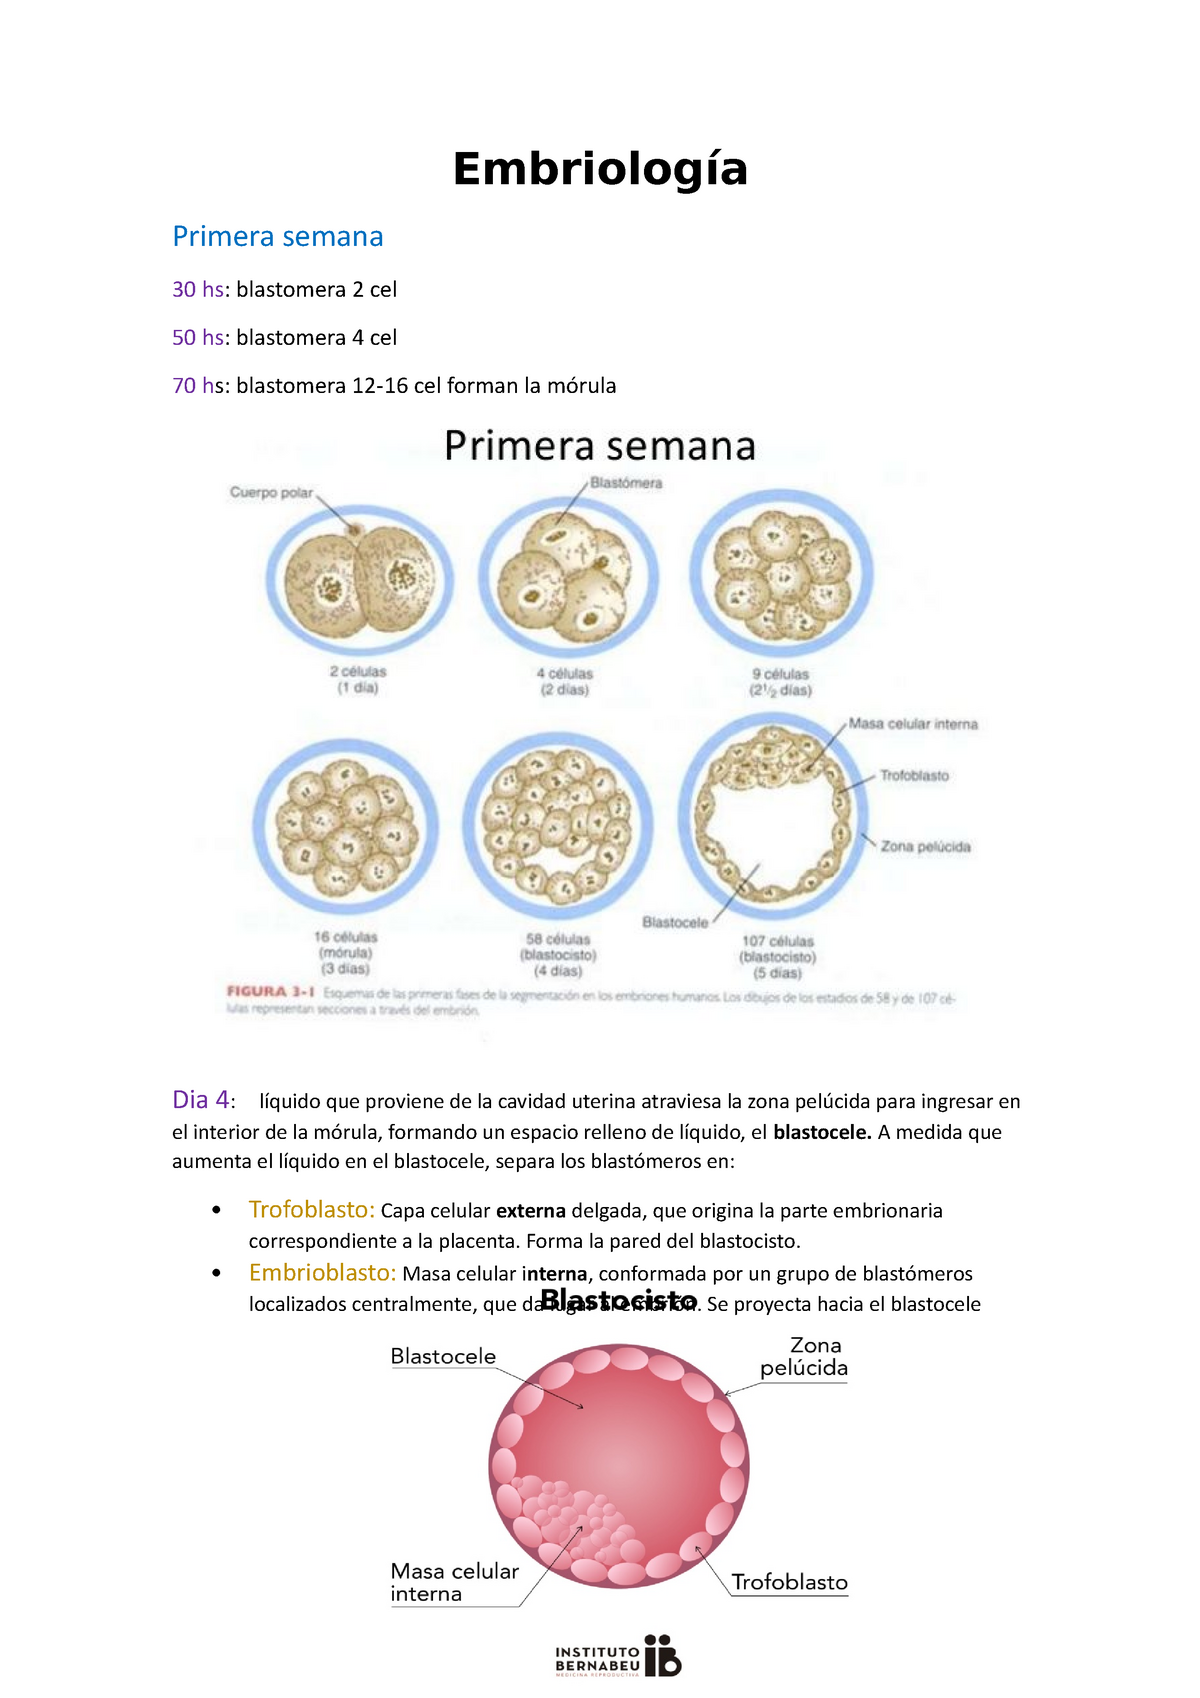 Embriologia De La Primera A La Cuarta Semana Embriología Primera Semana 30 Hs Blastomera 2 0439